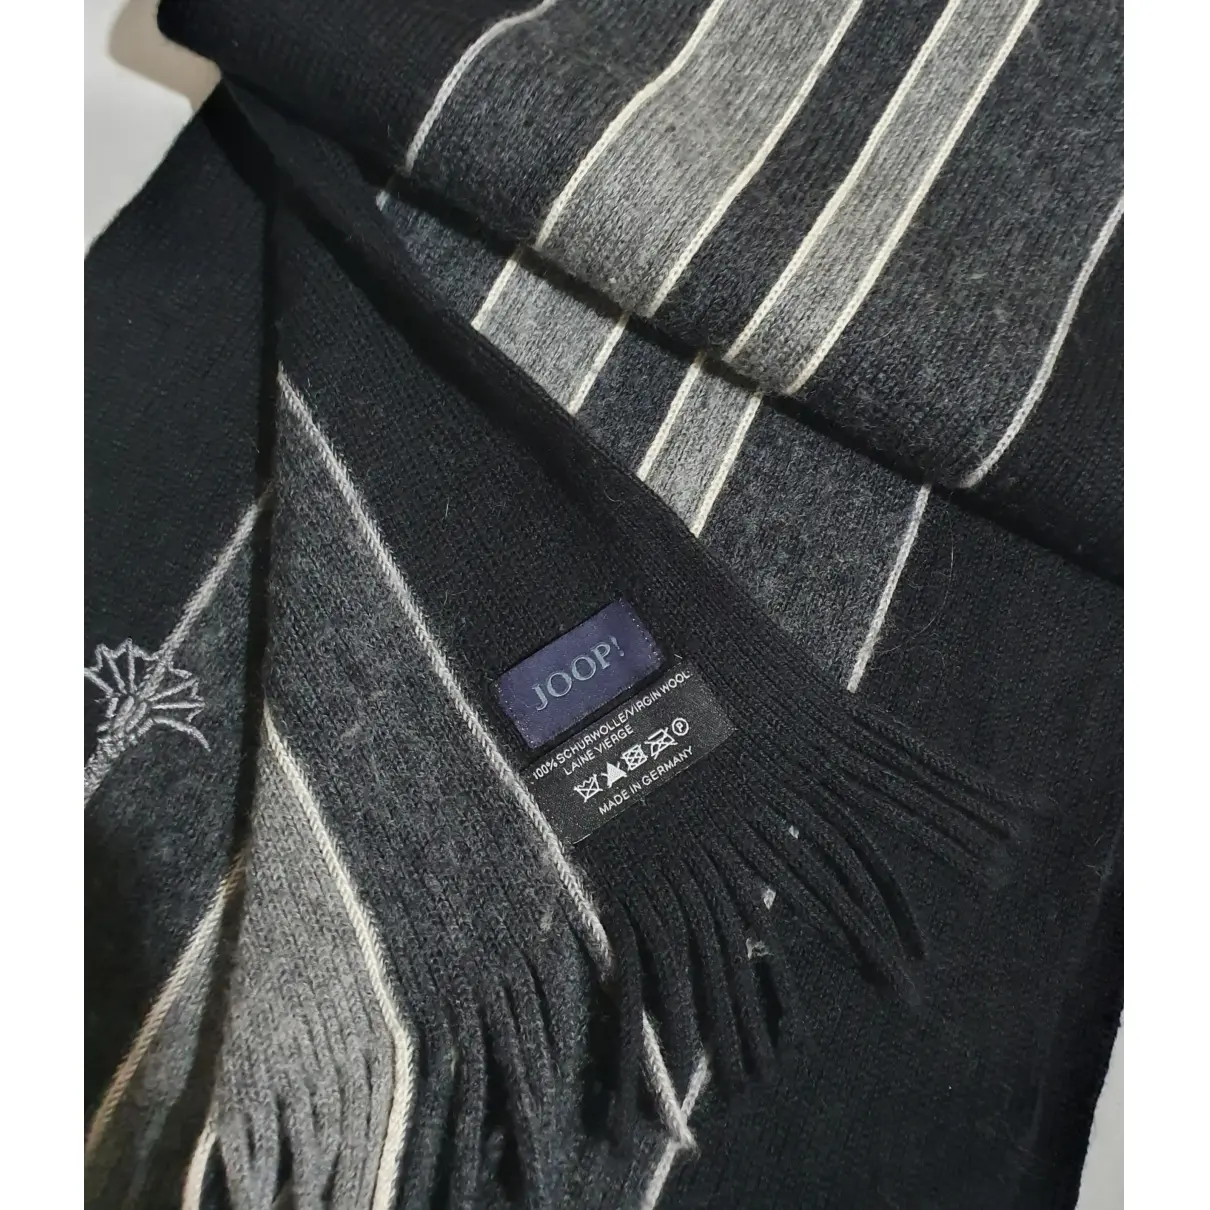 Buy Jette Joop Wool scarf & pocket square online